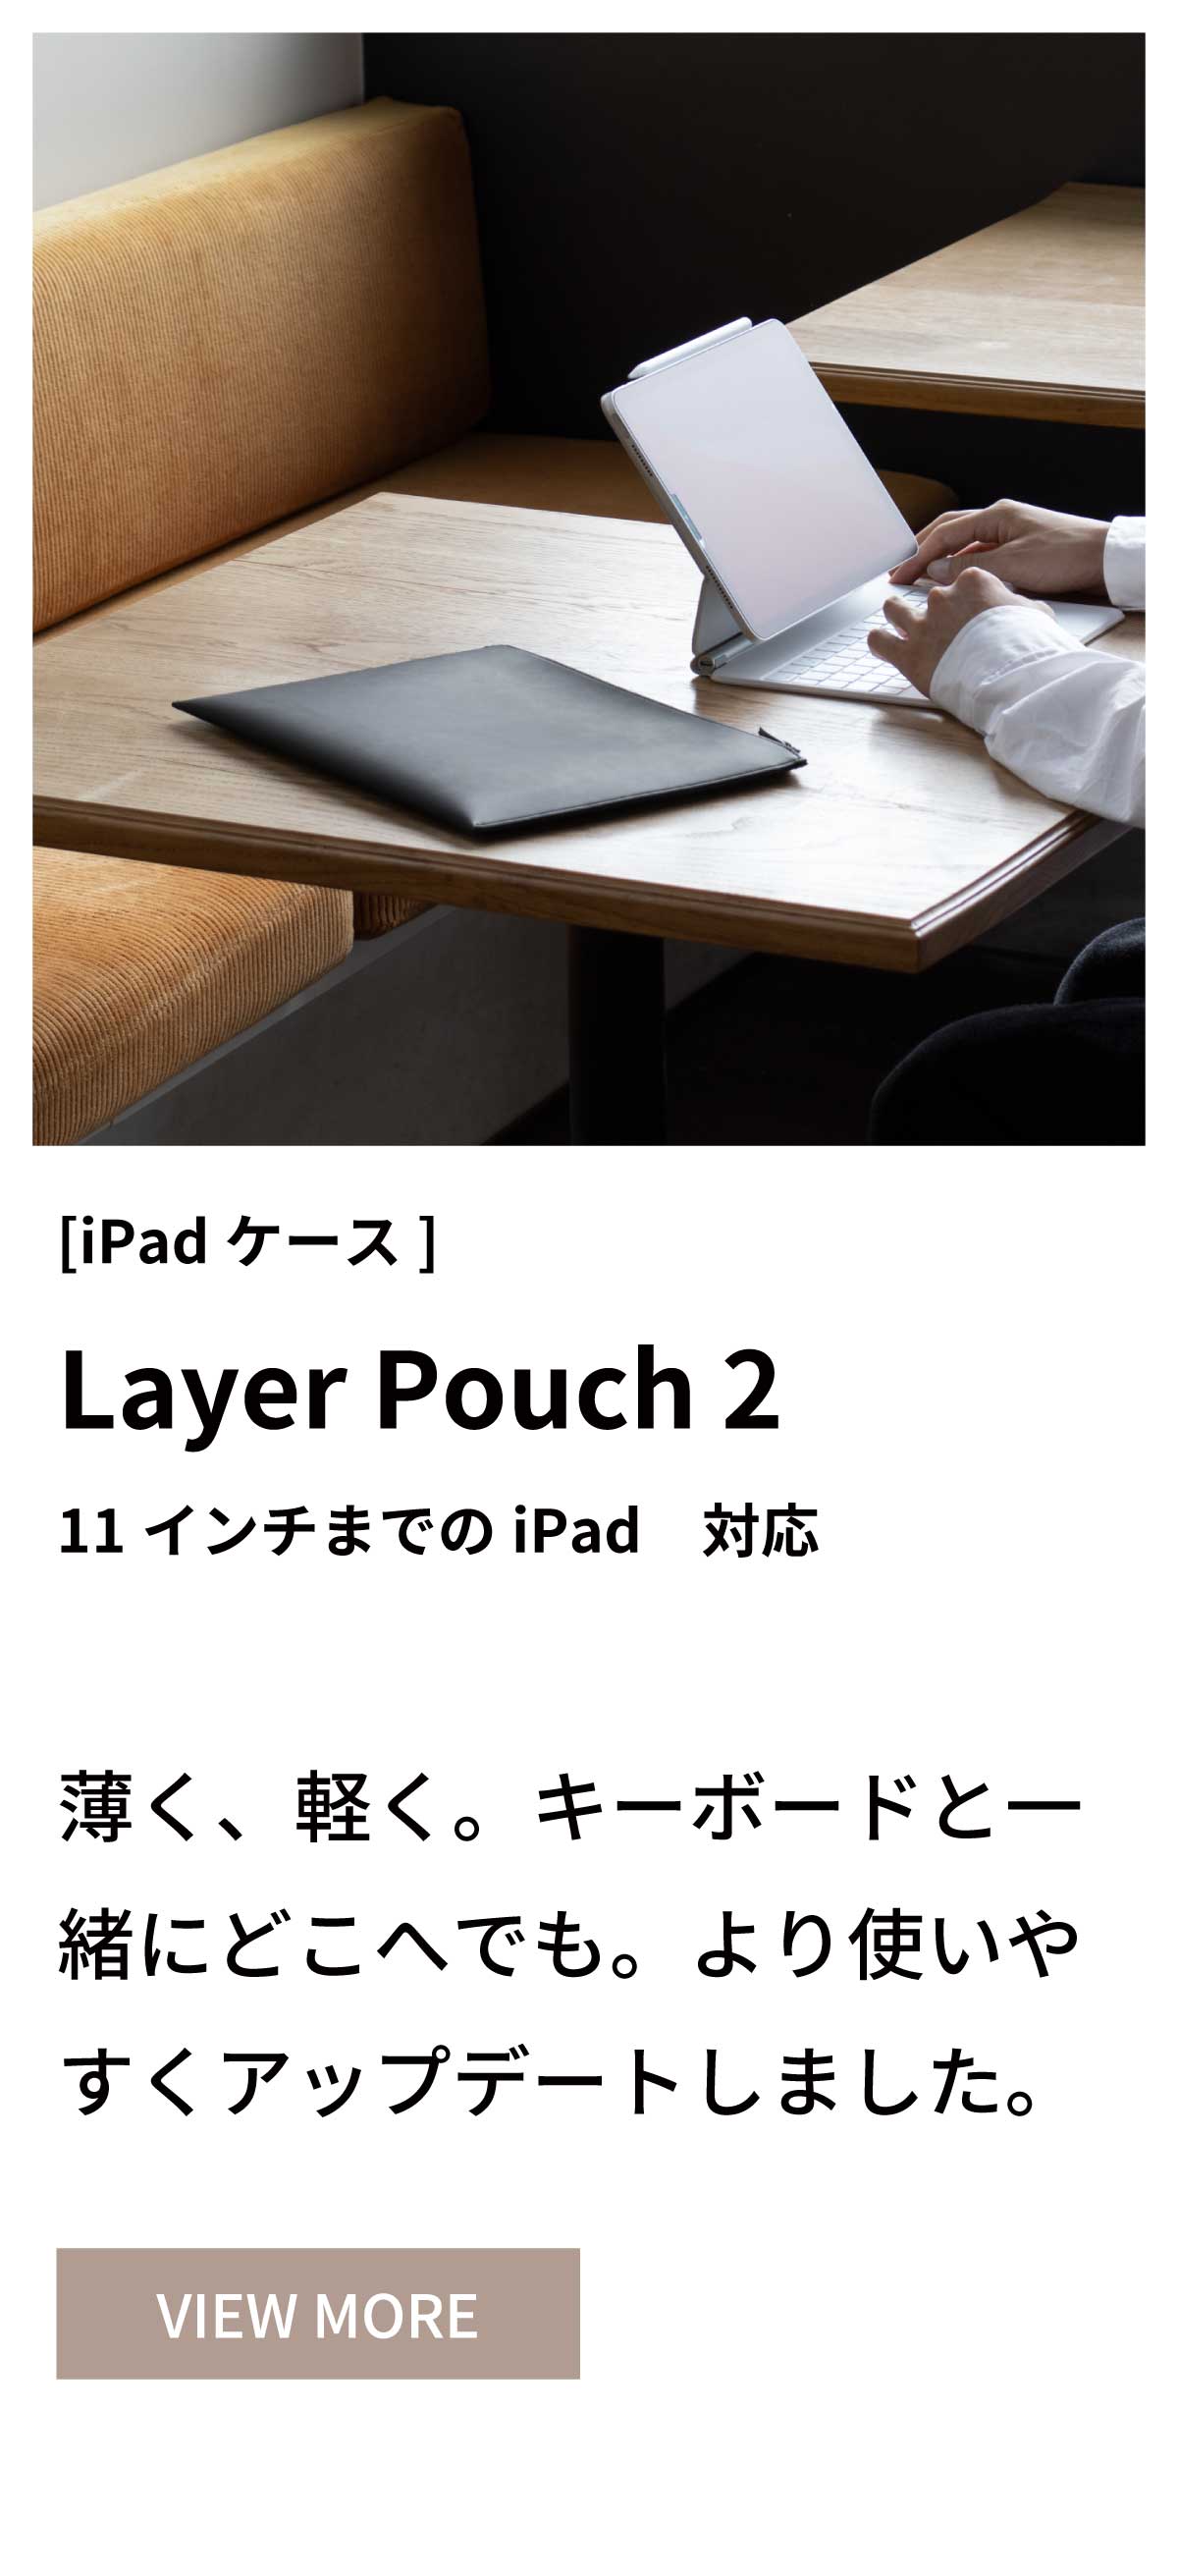 iPadポーチ レイヤーポーチカラー タブレットポーチ